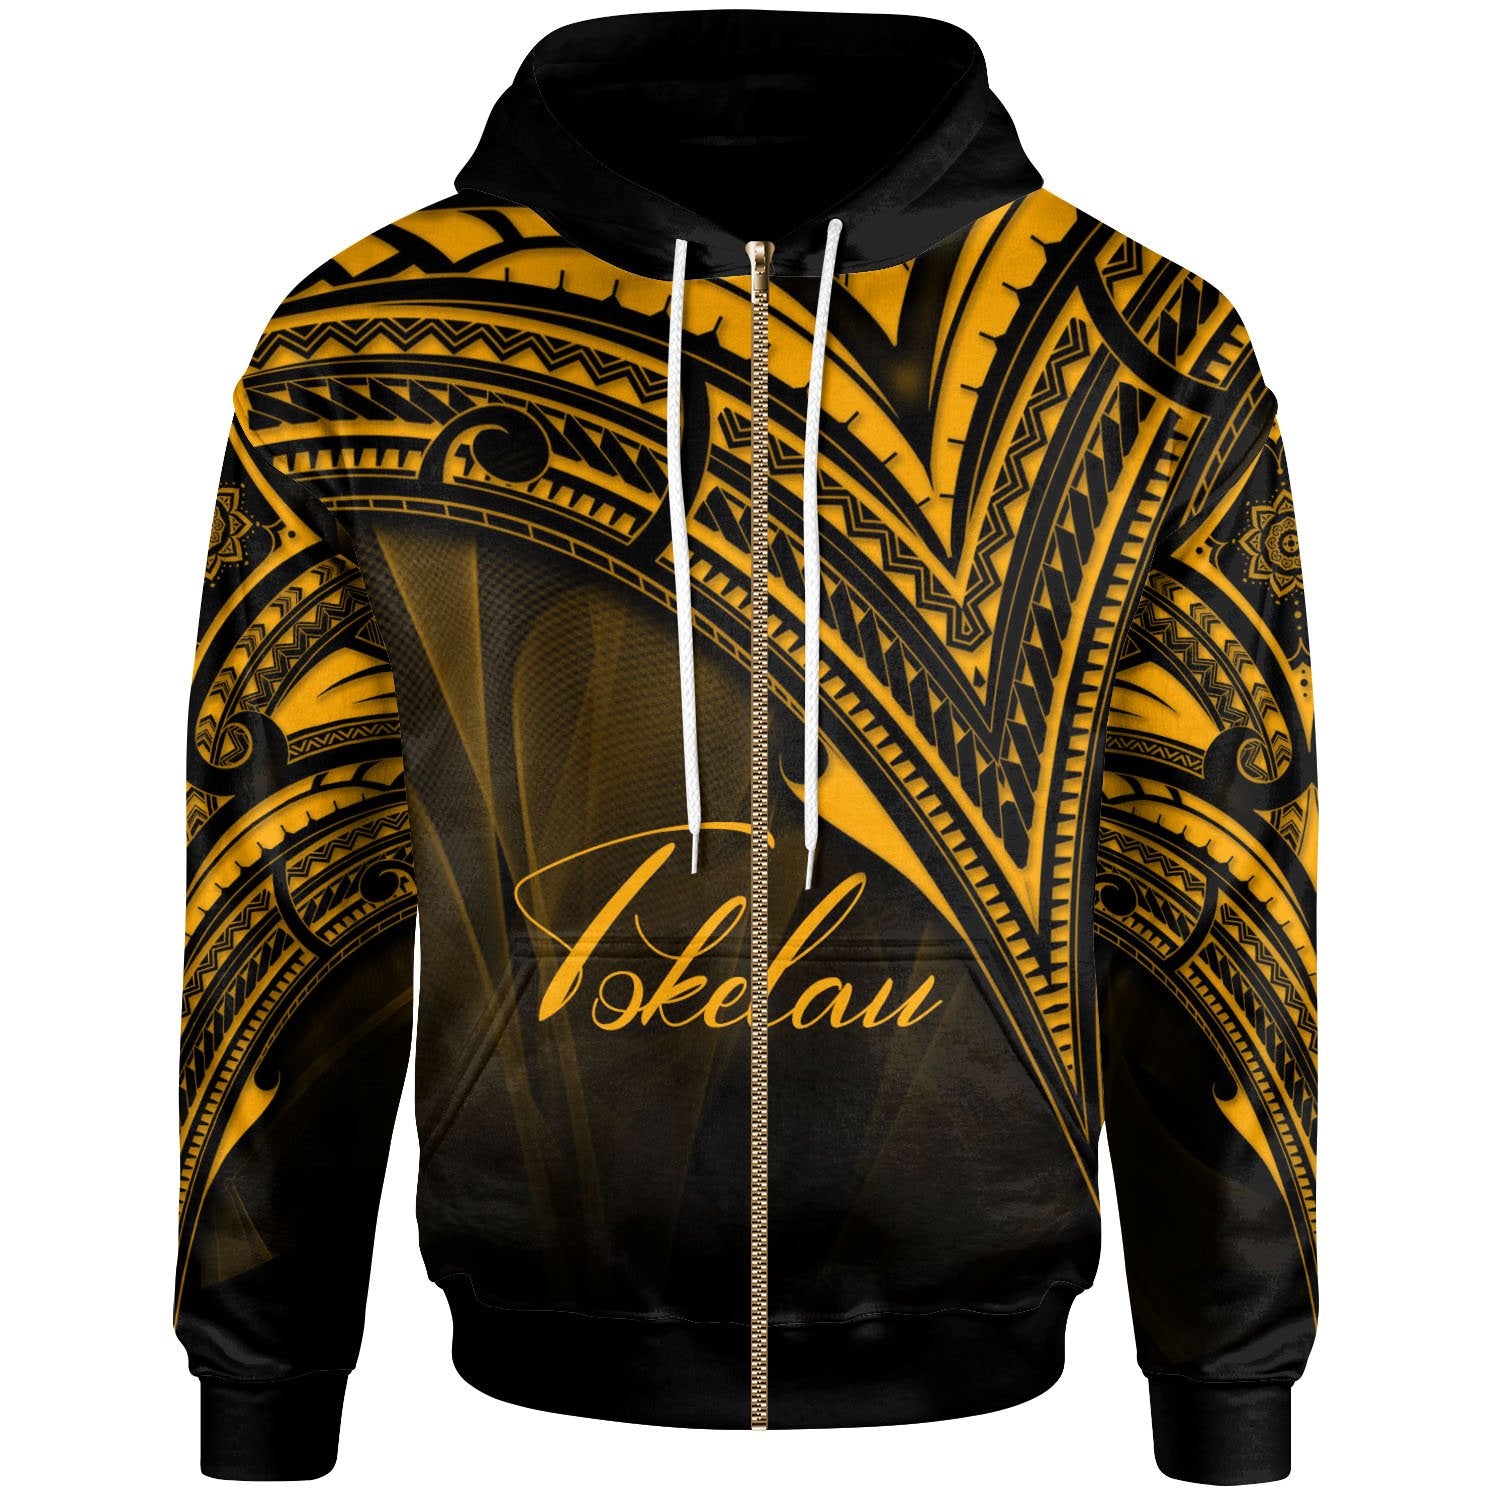 Tokelau Zip Hoodie Gold Color Cross Style Unisex Black - Polynesian Pride